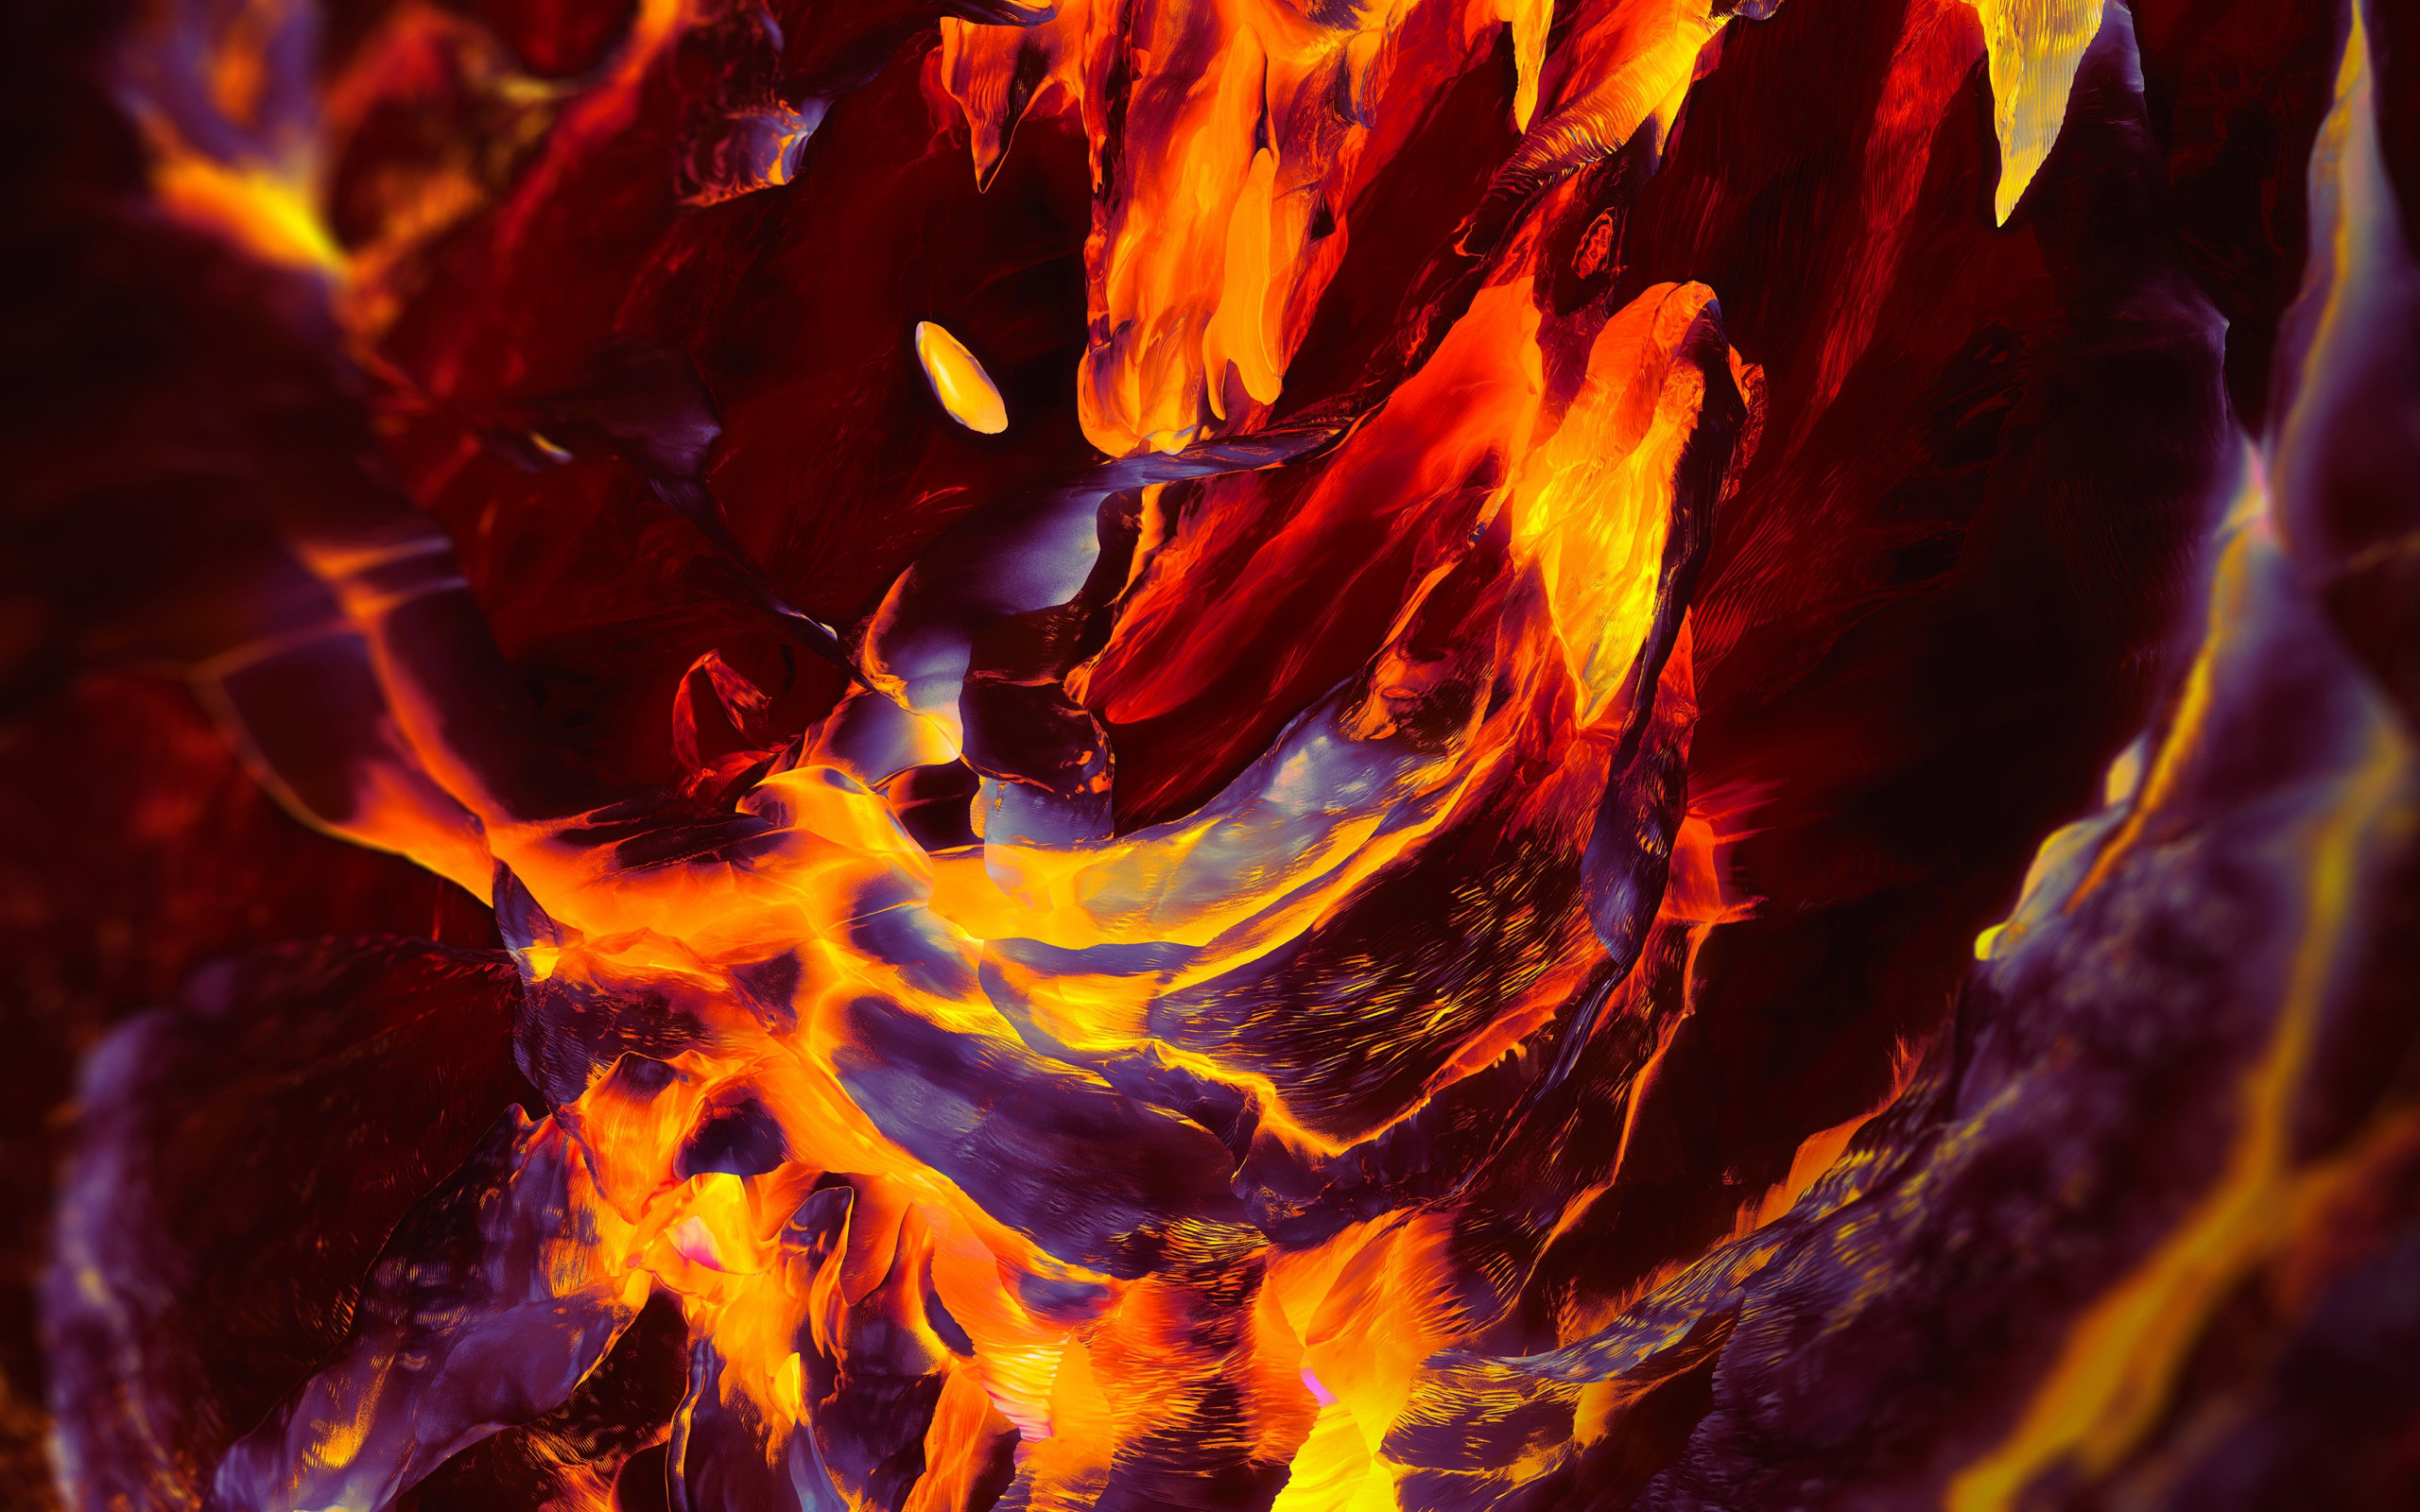 OnePlus Fire wallpaper 2560x1600